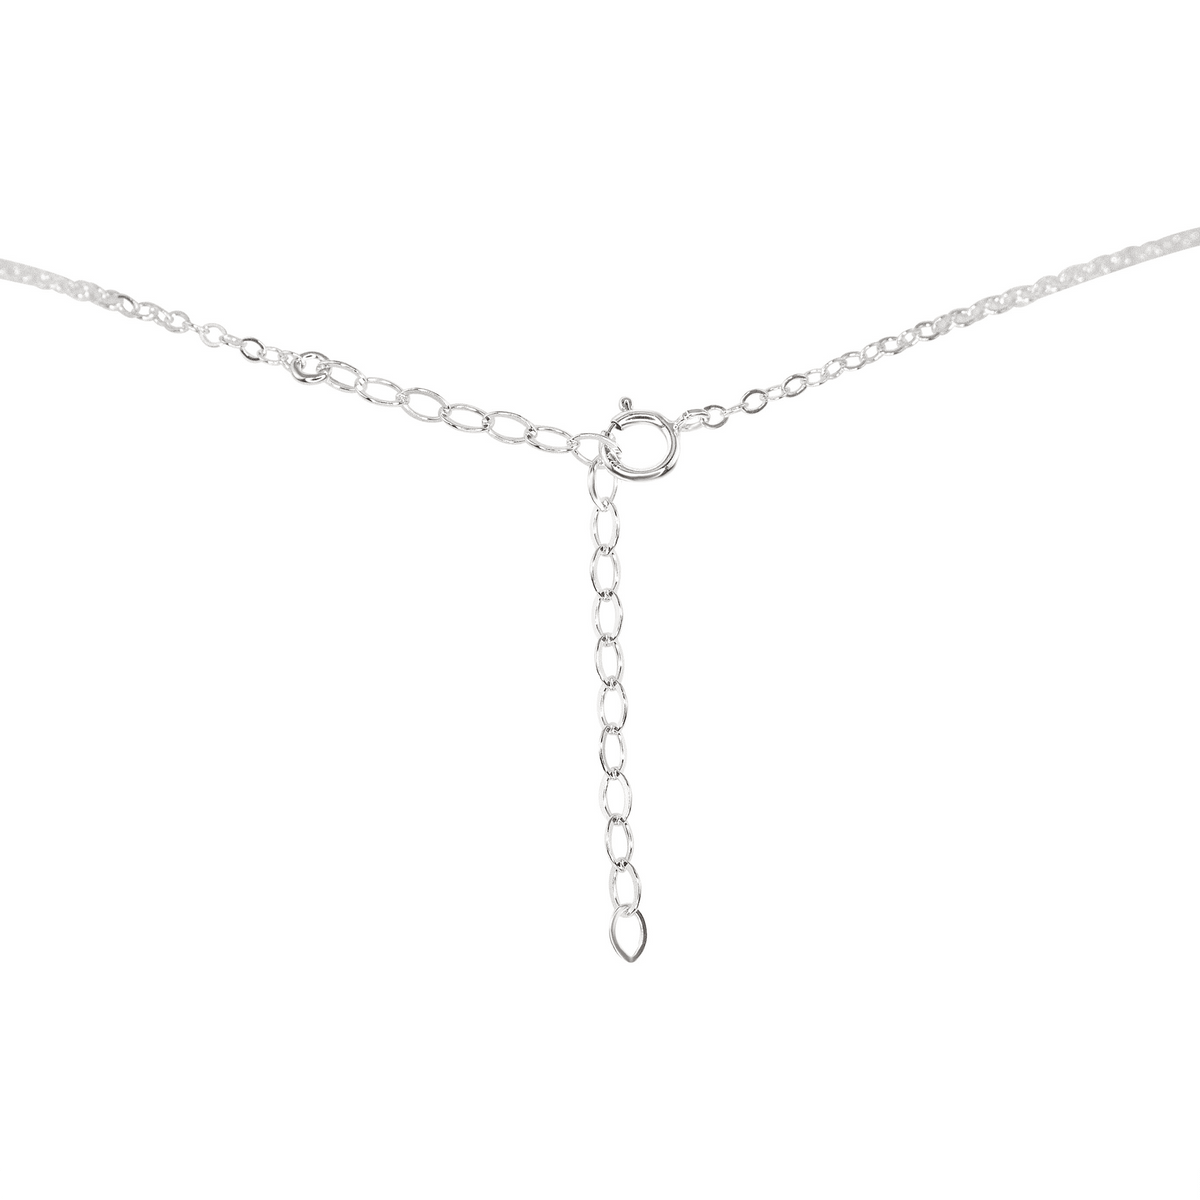 Dainty Tourmaline Lariat Necklace - Dainty Tourmaline Lariat Necklace - 14k Gold Fill - Luna Tide Handmade Crystal Jewellery